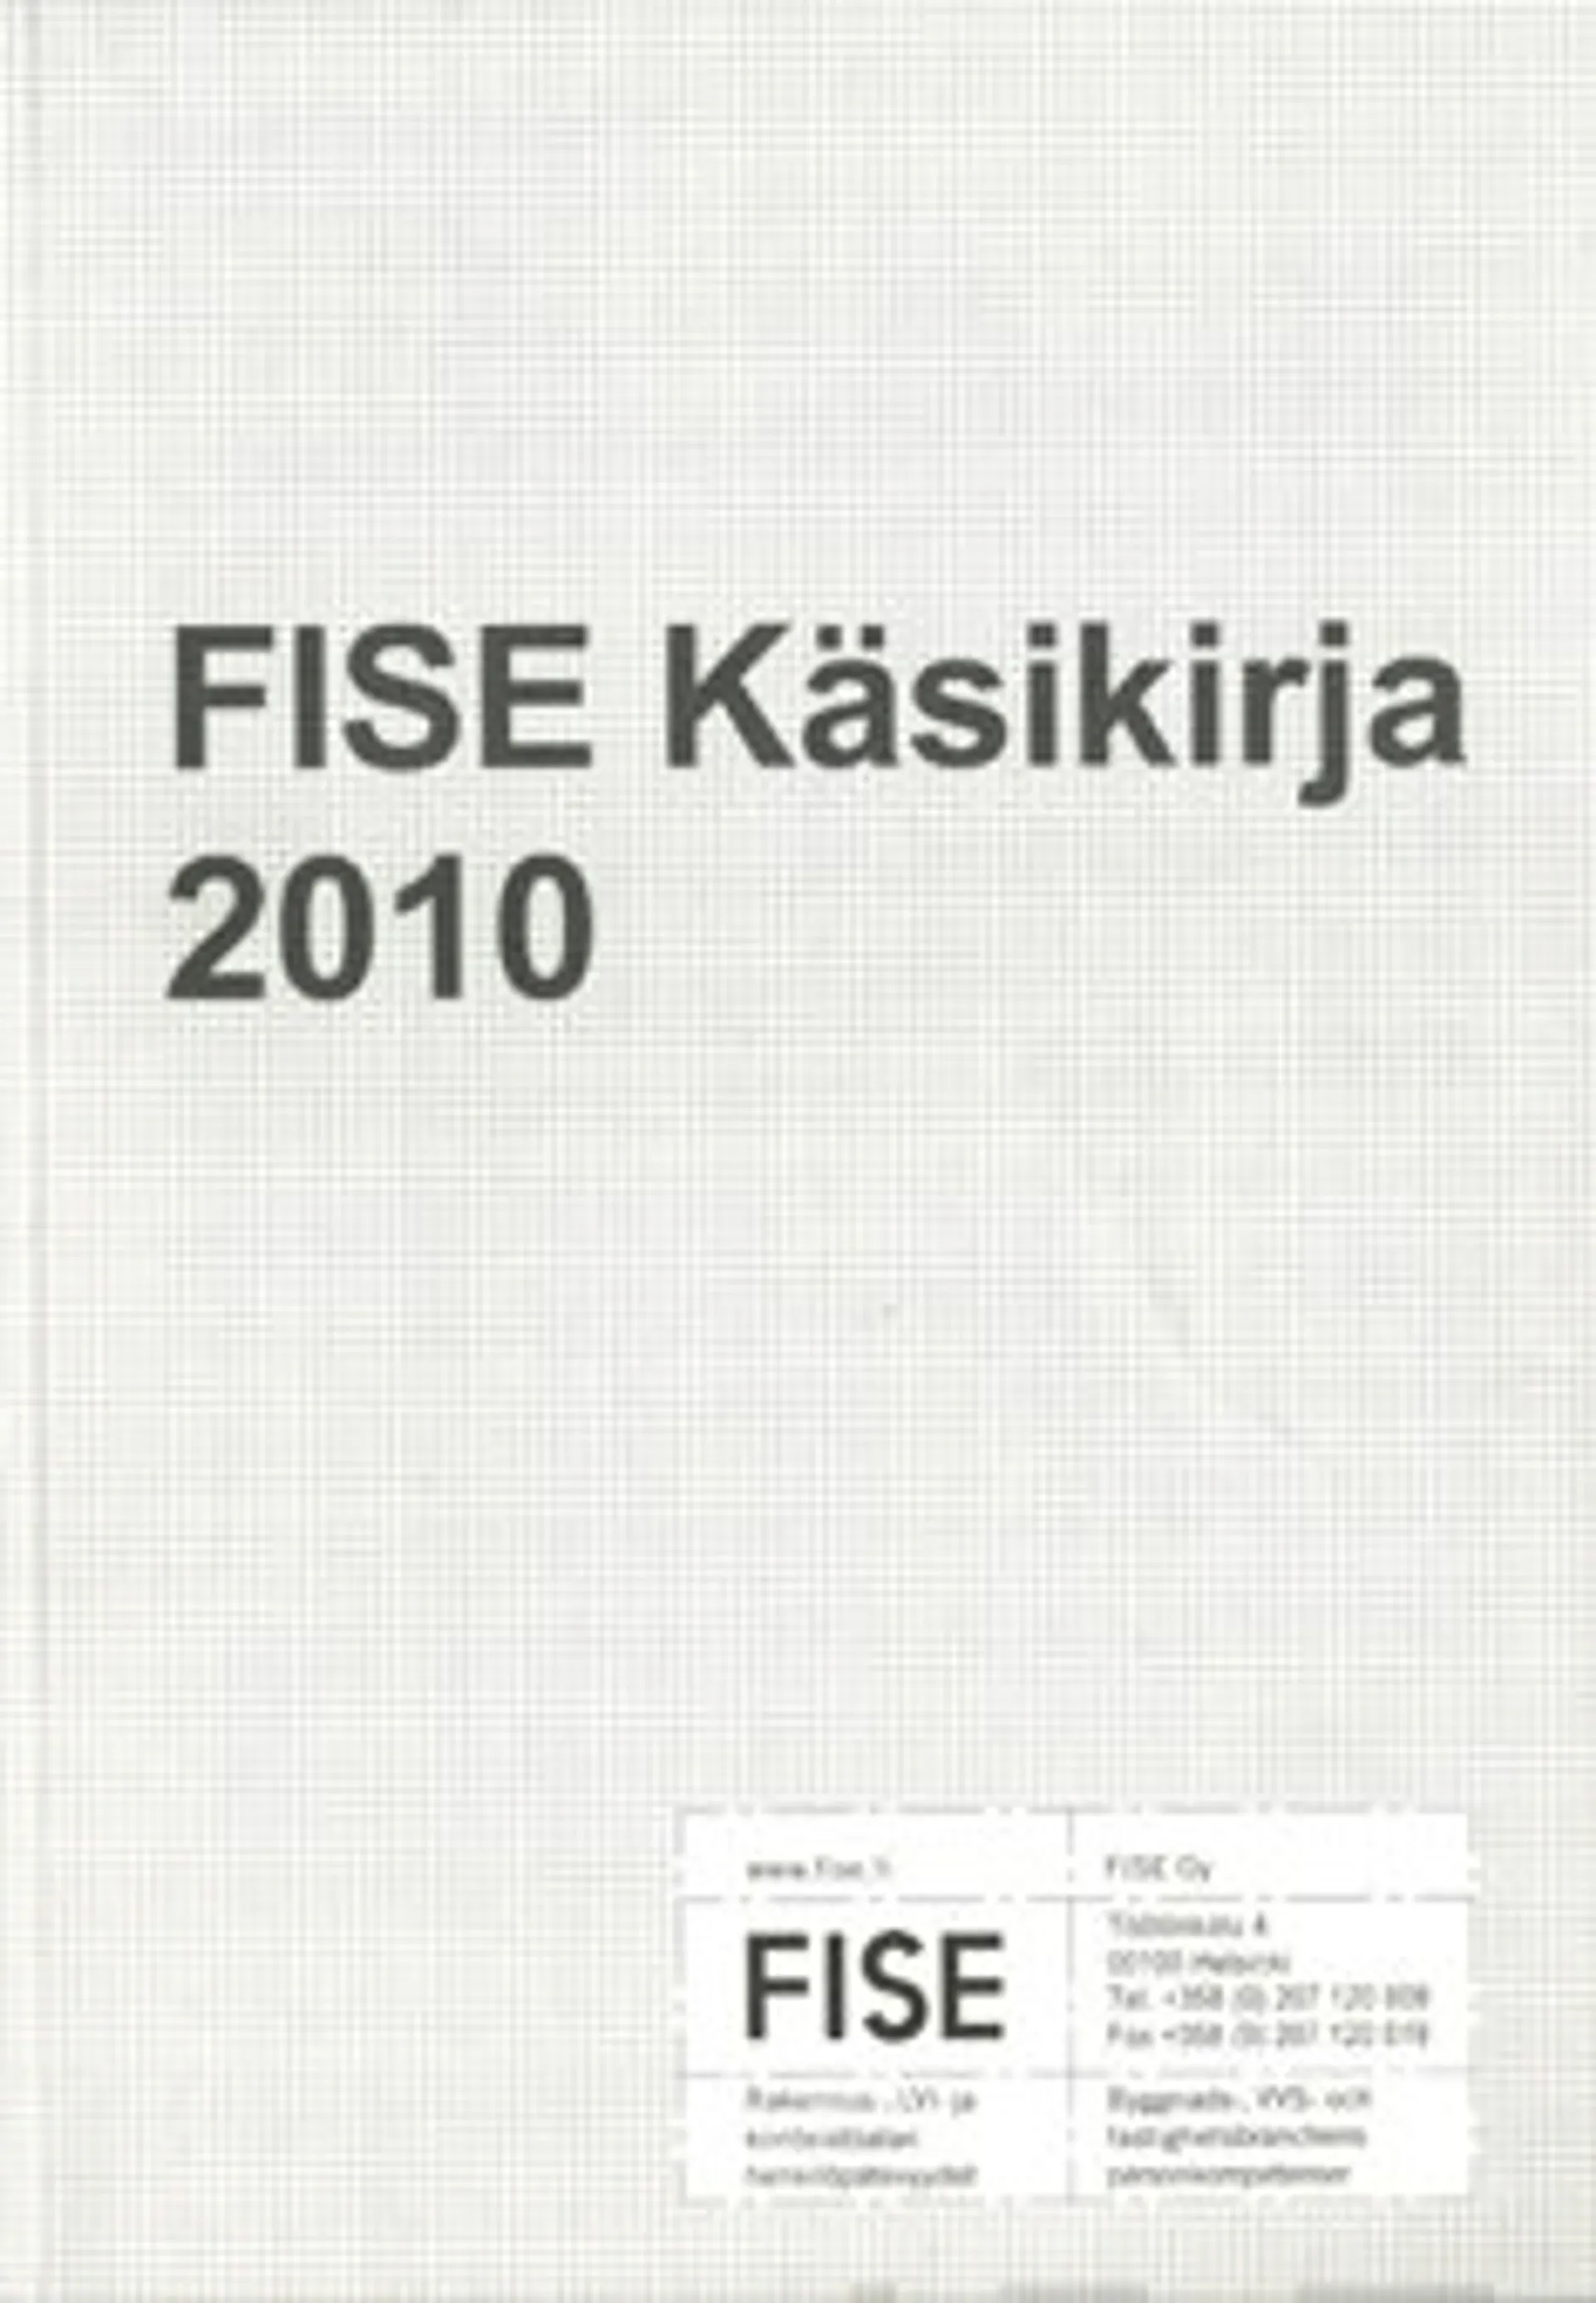 FISE käsikirja 2010